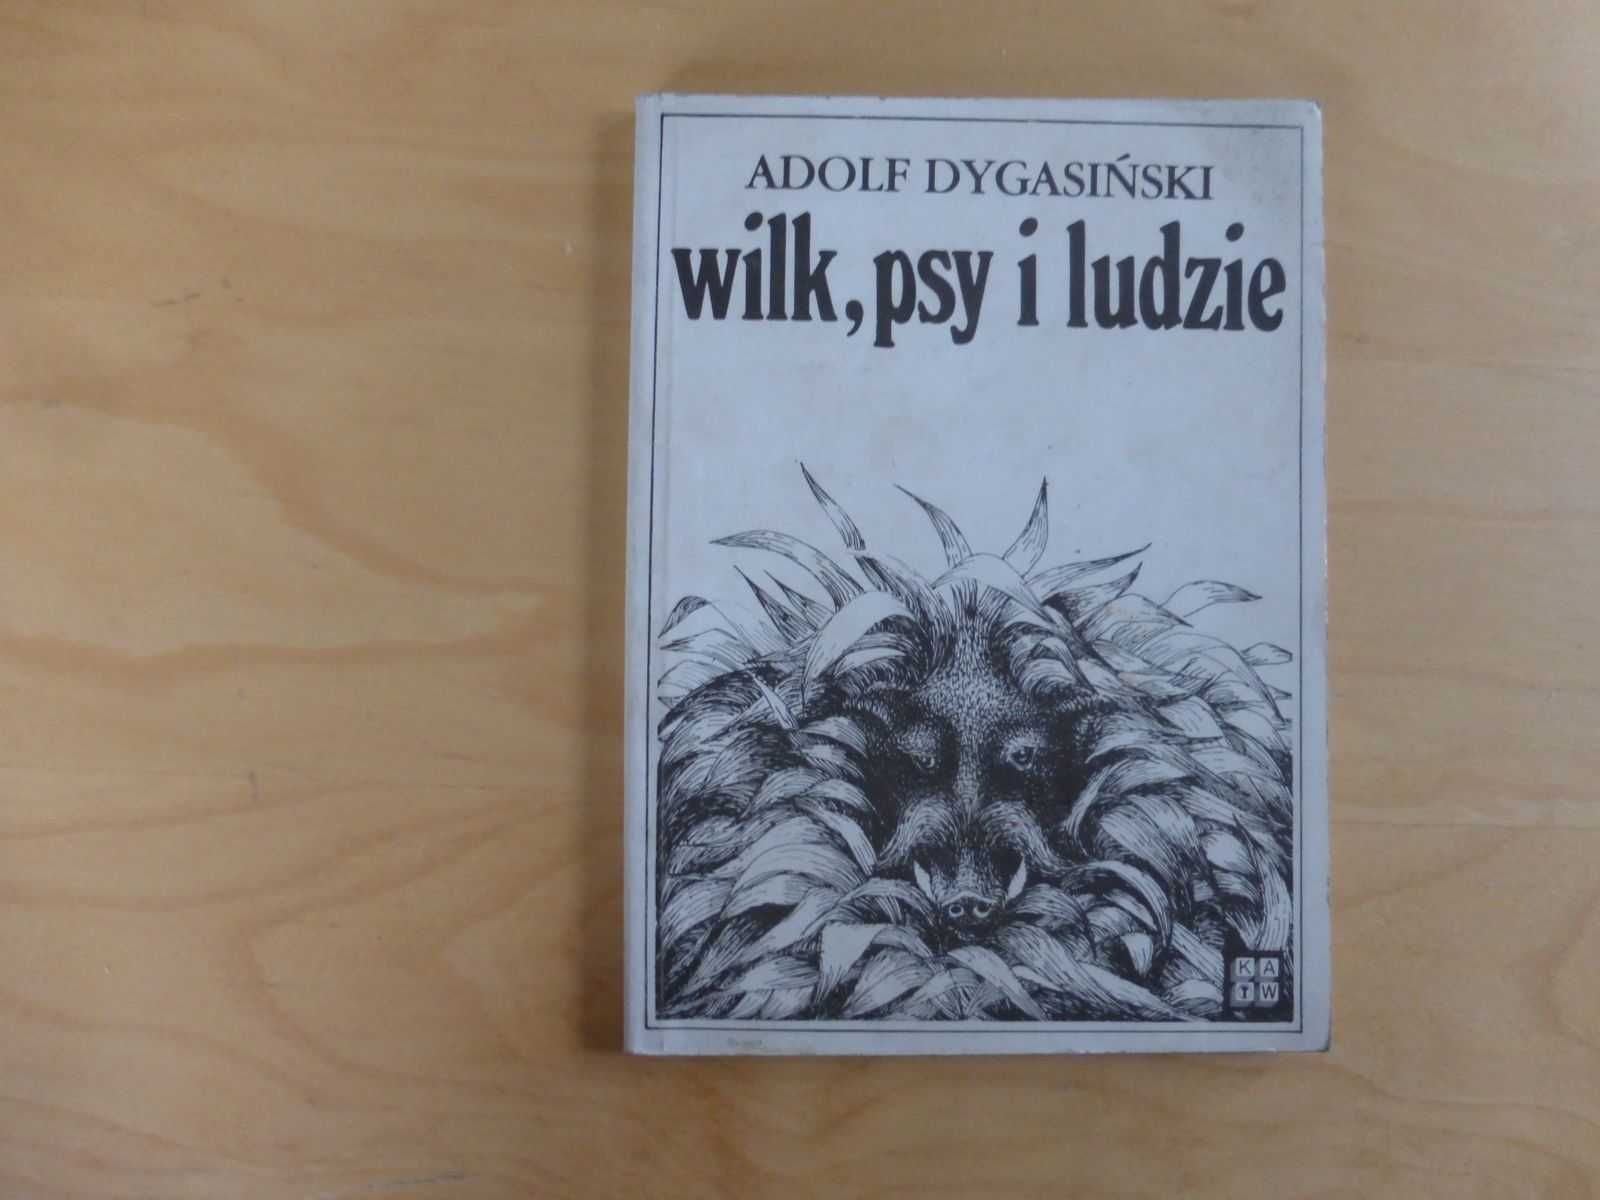 Wilki, psy i ludzie. Adolf Dygasiński. KAW 1985